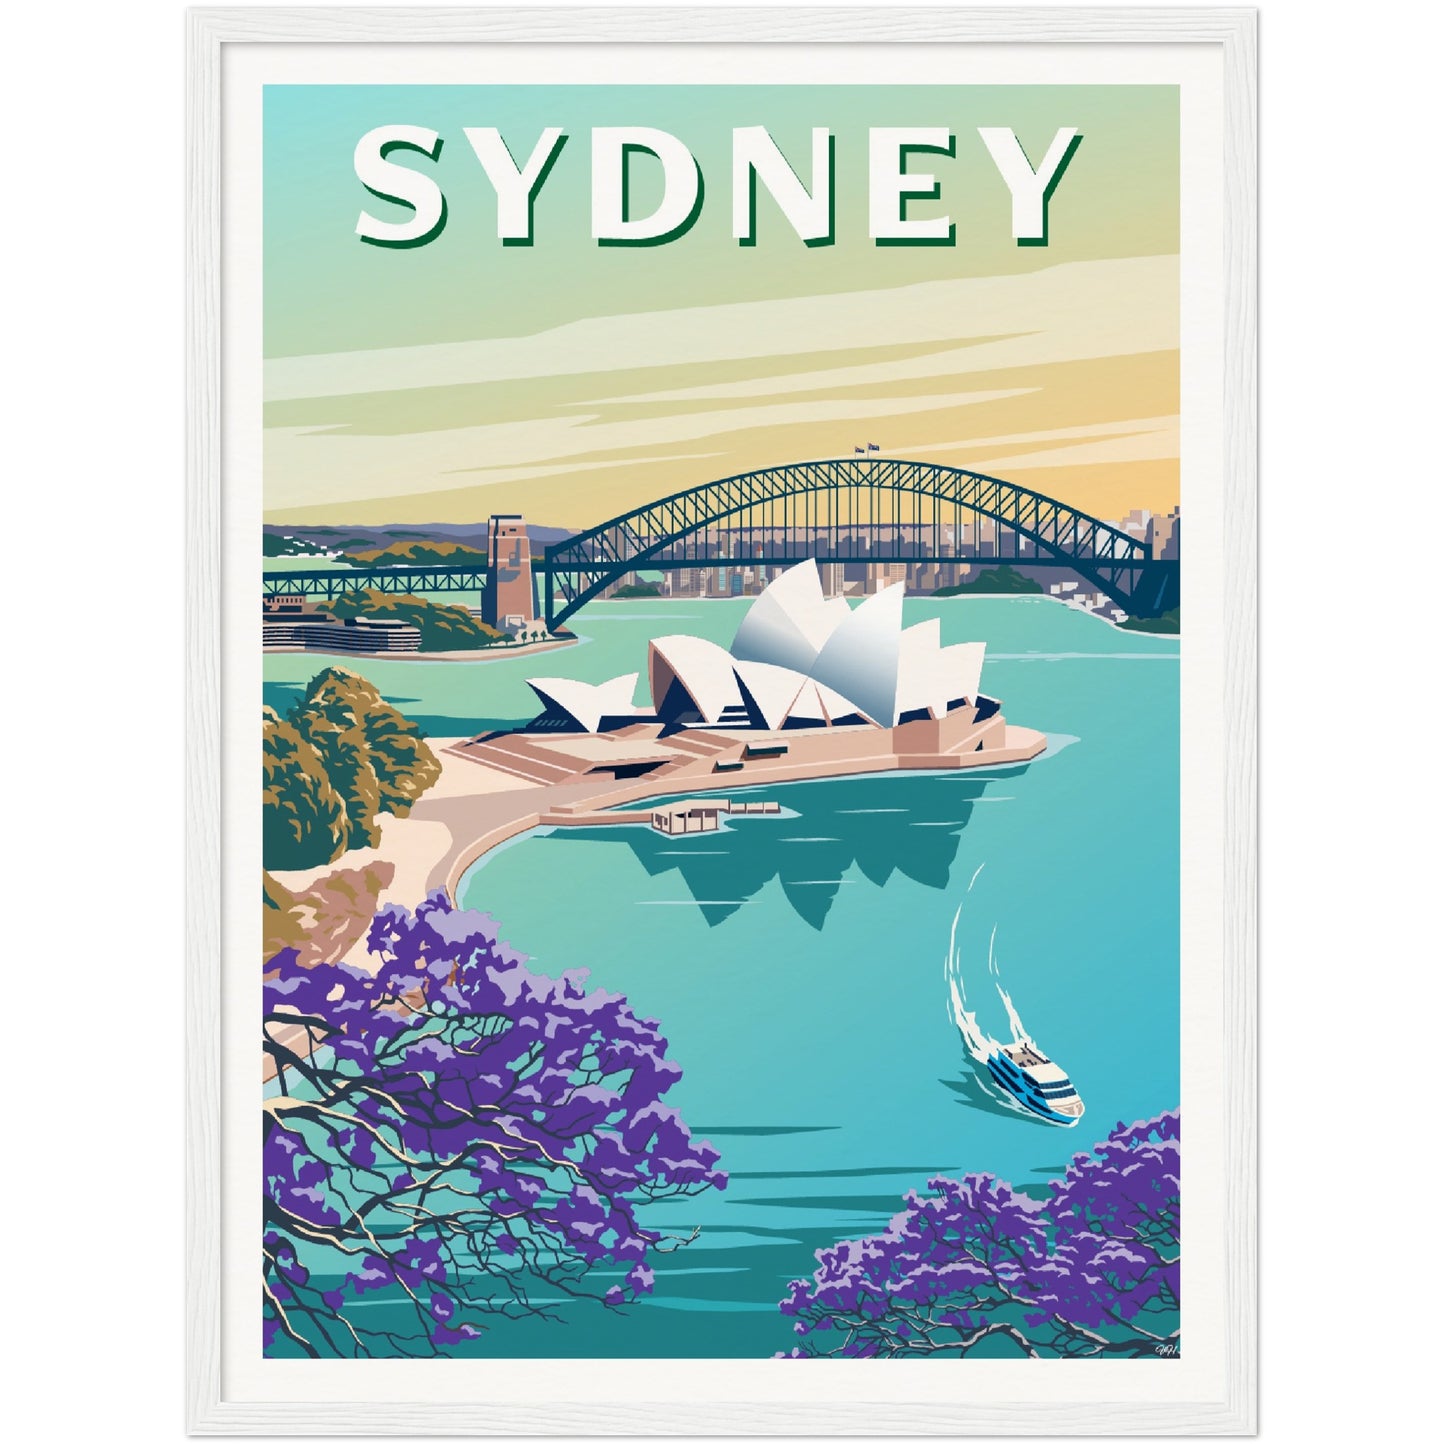 Sydney Travel Poster, Australia